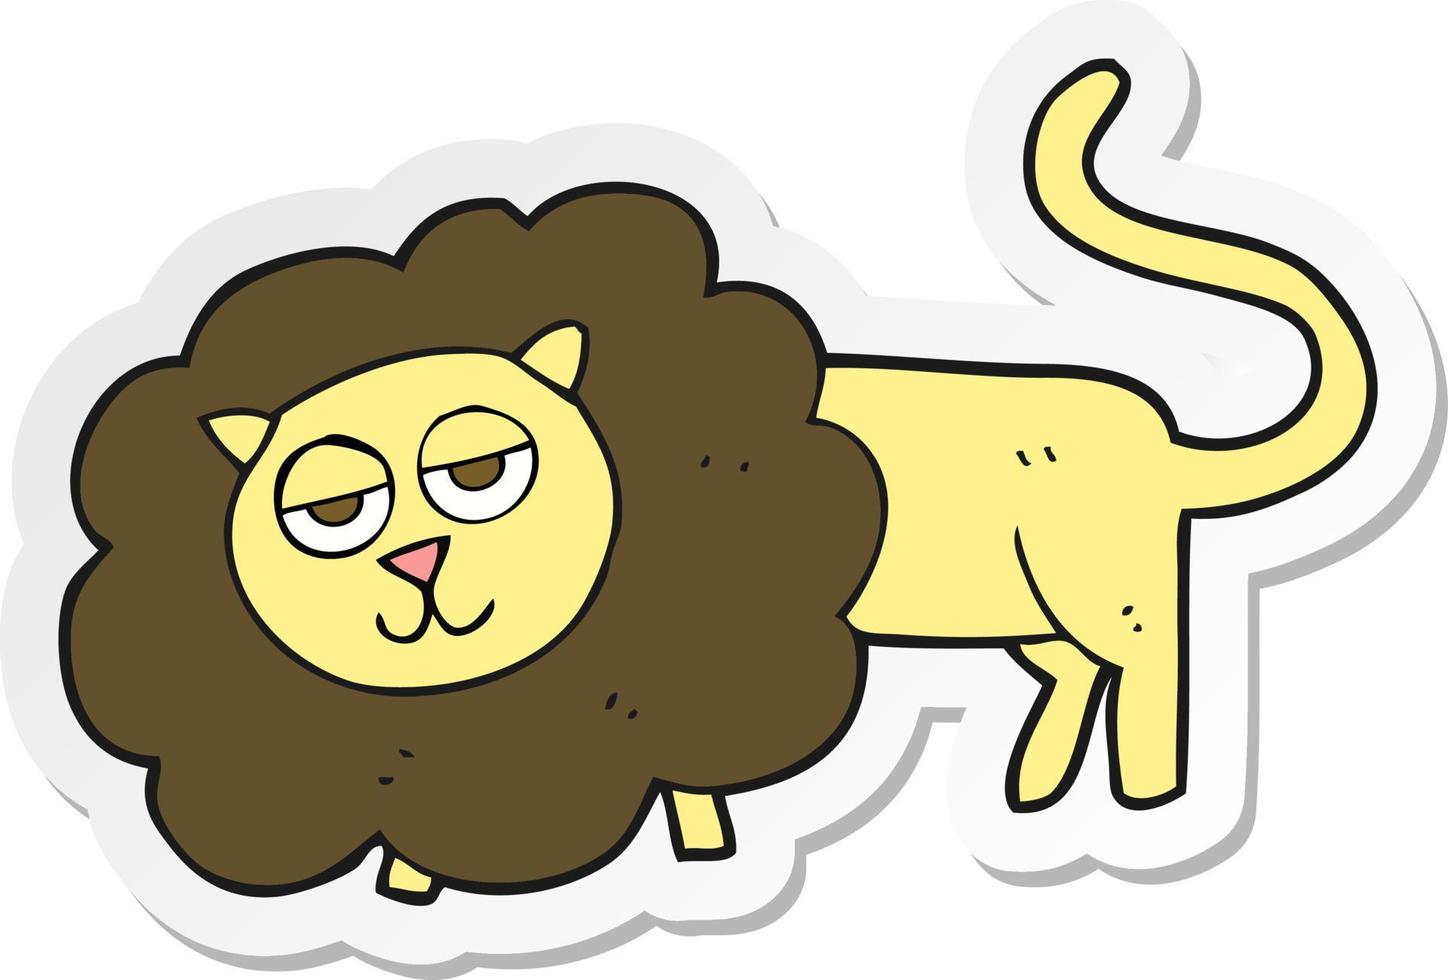 klistermärke av ett tecknat lejon vektor